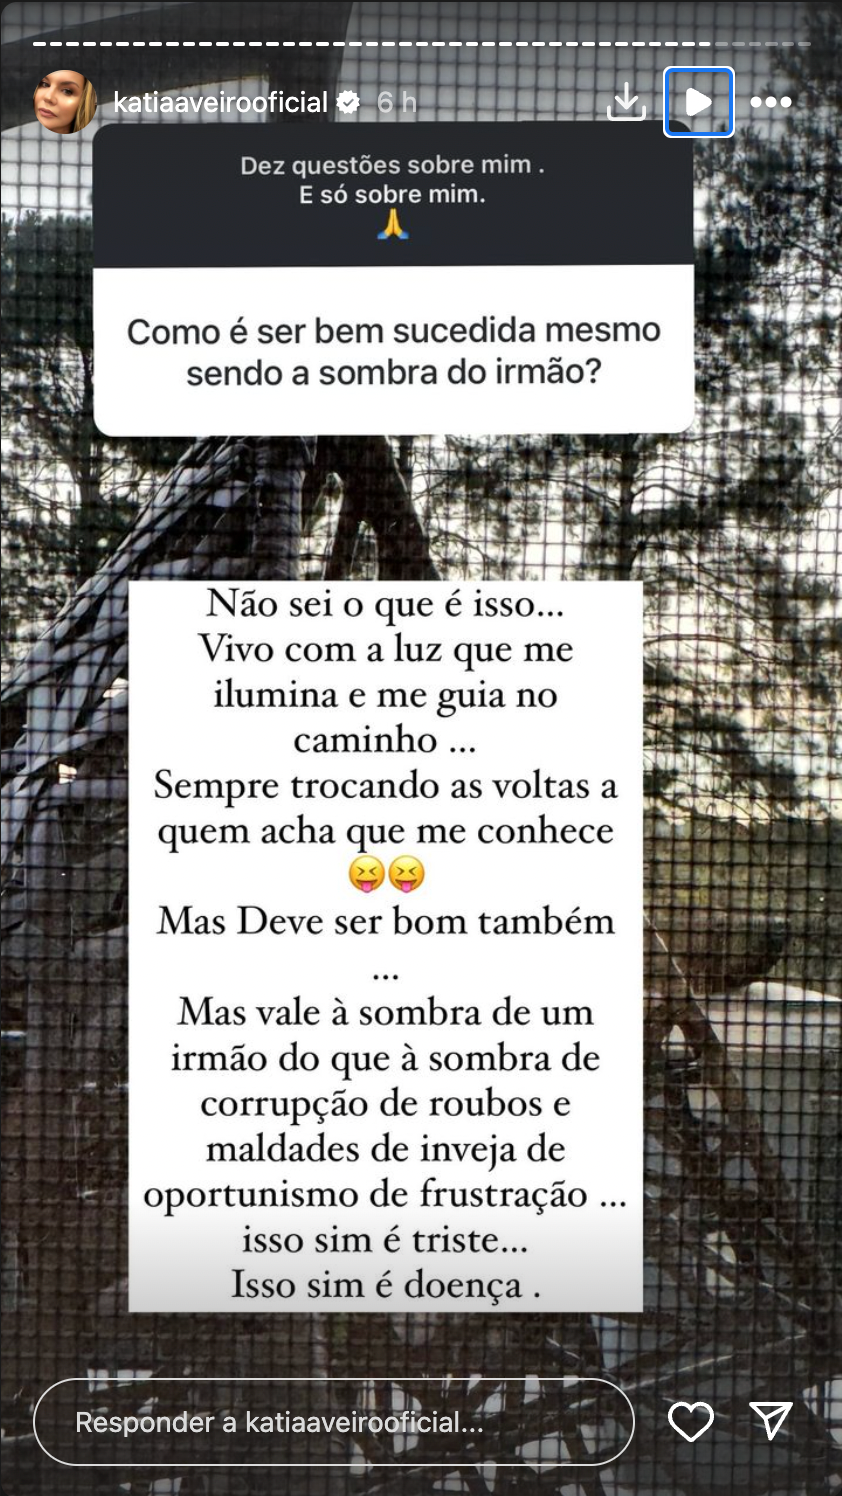 Katia Aveiro reage a comentário: “Mais vale andar à sombra de um irmão do que de maldades e inveja”